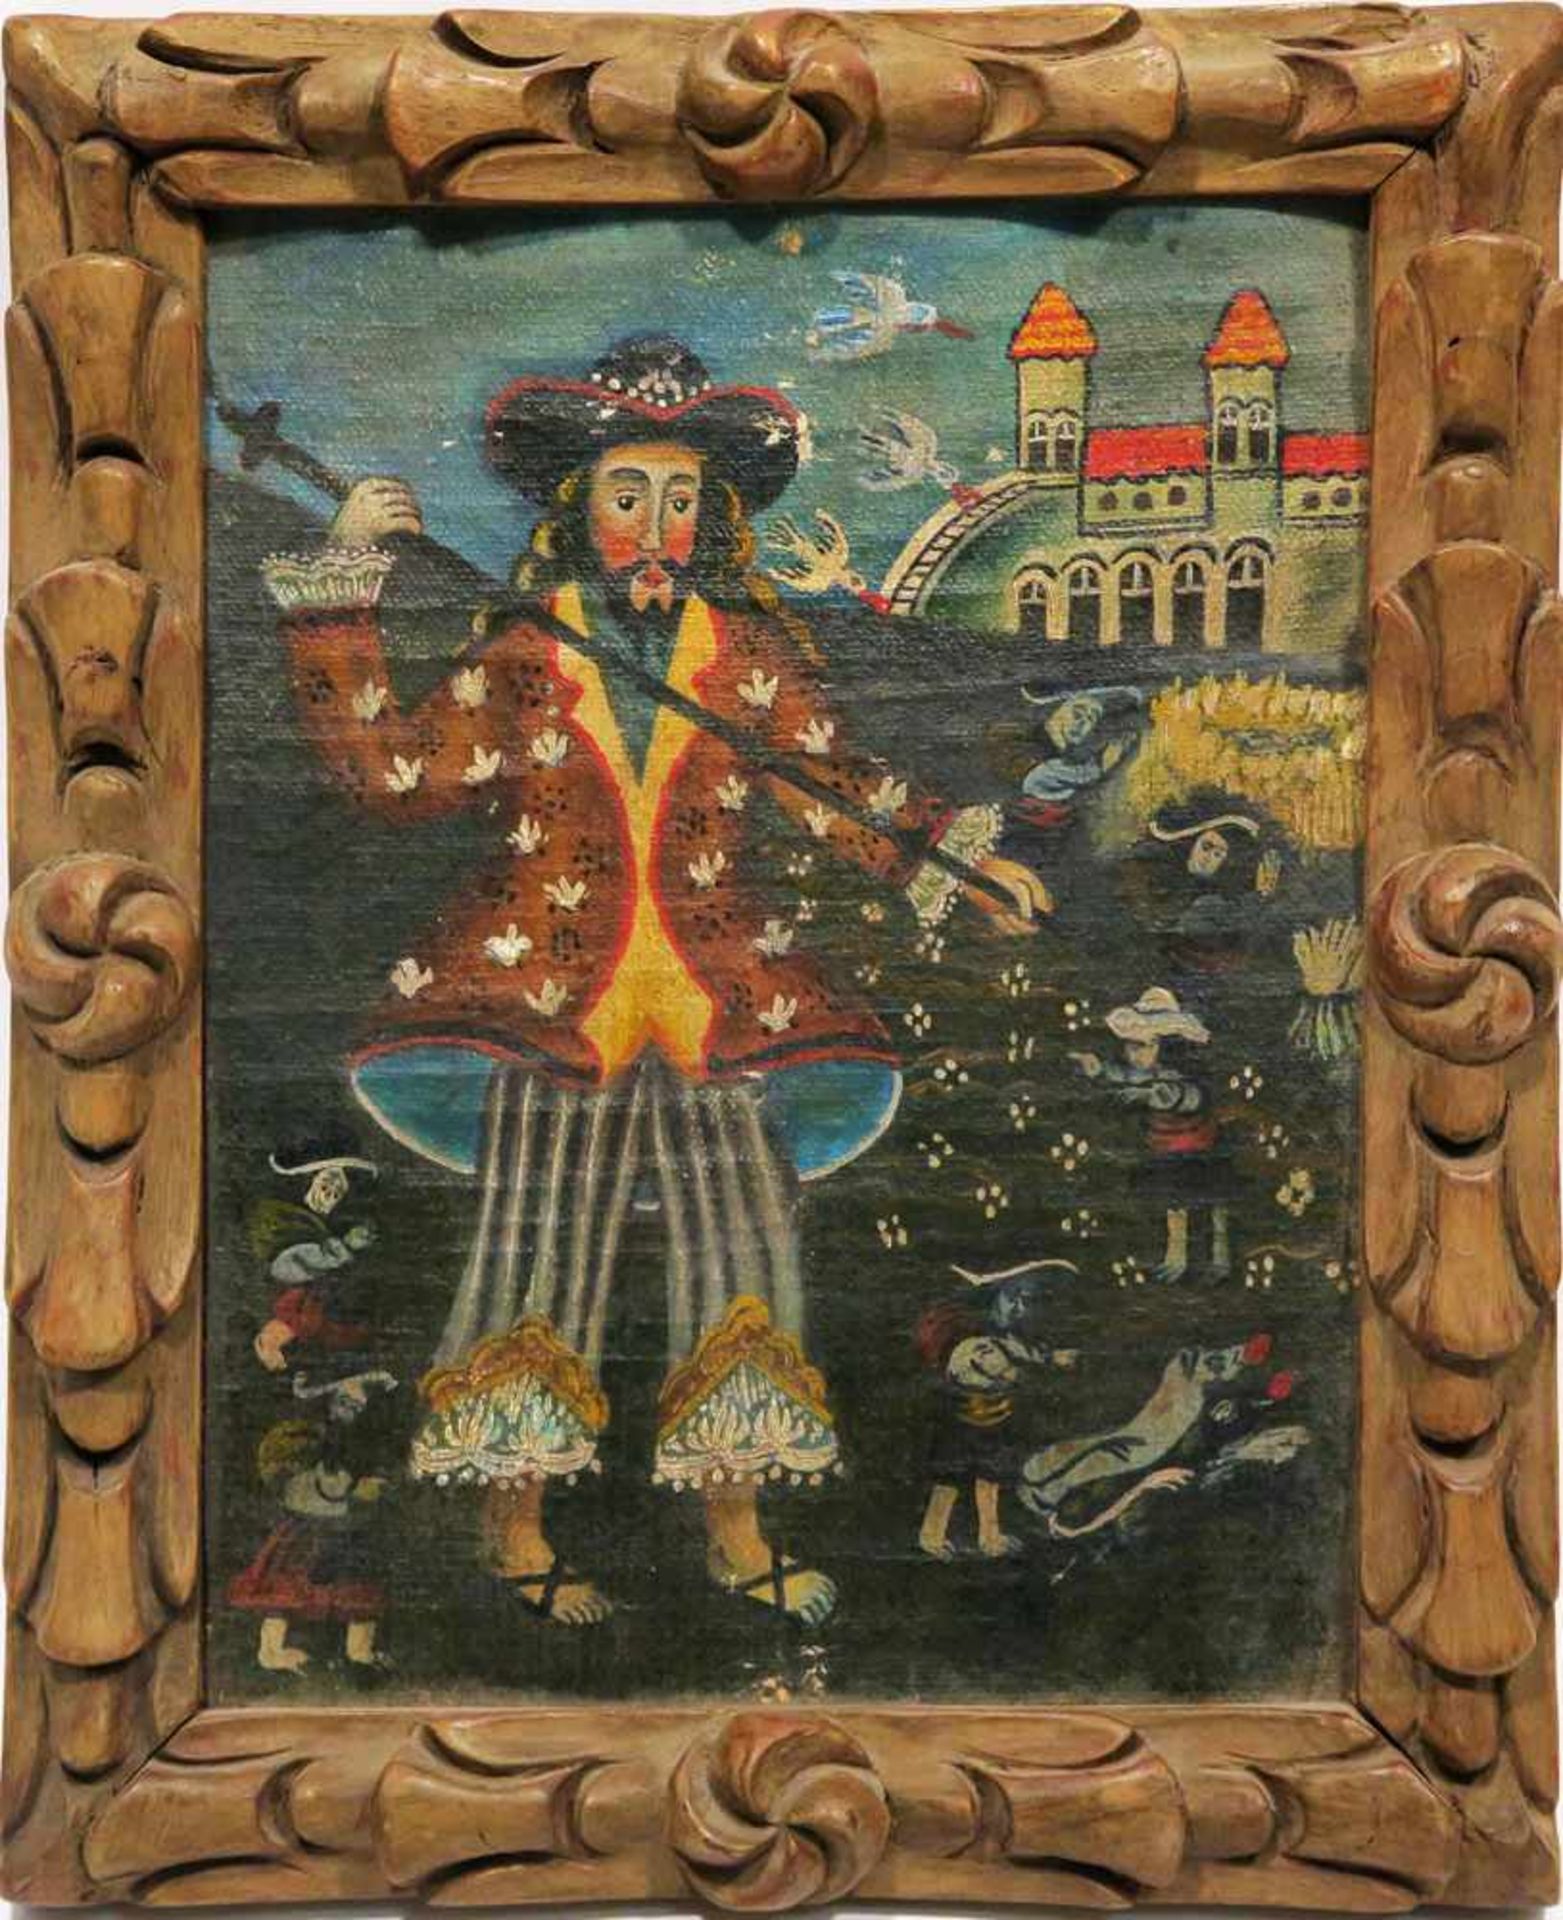 Südamerika Darstellung einer südamerikanischen Legende (?) Öl/Lwd. 22,5 x 17,5 cm. Rest., besch.